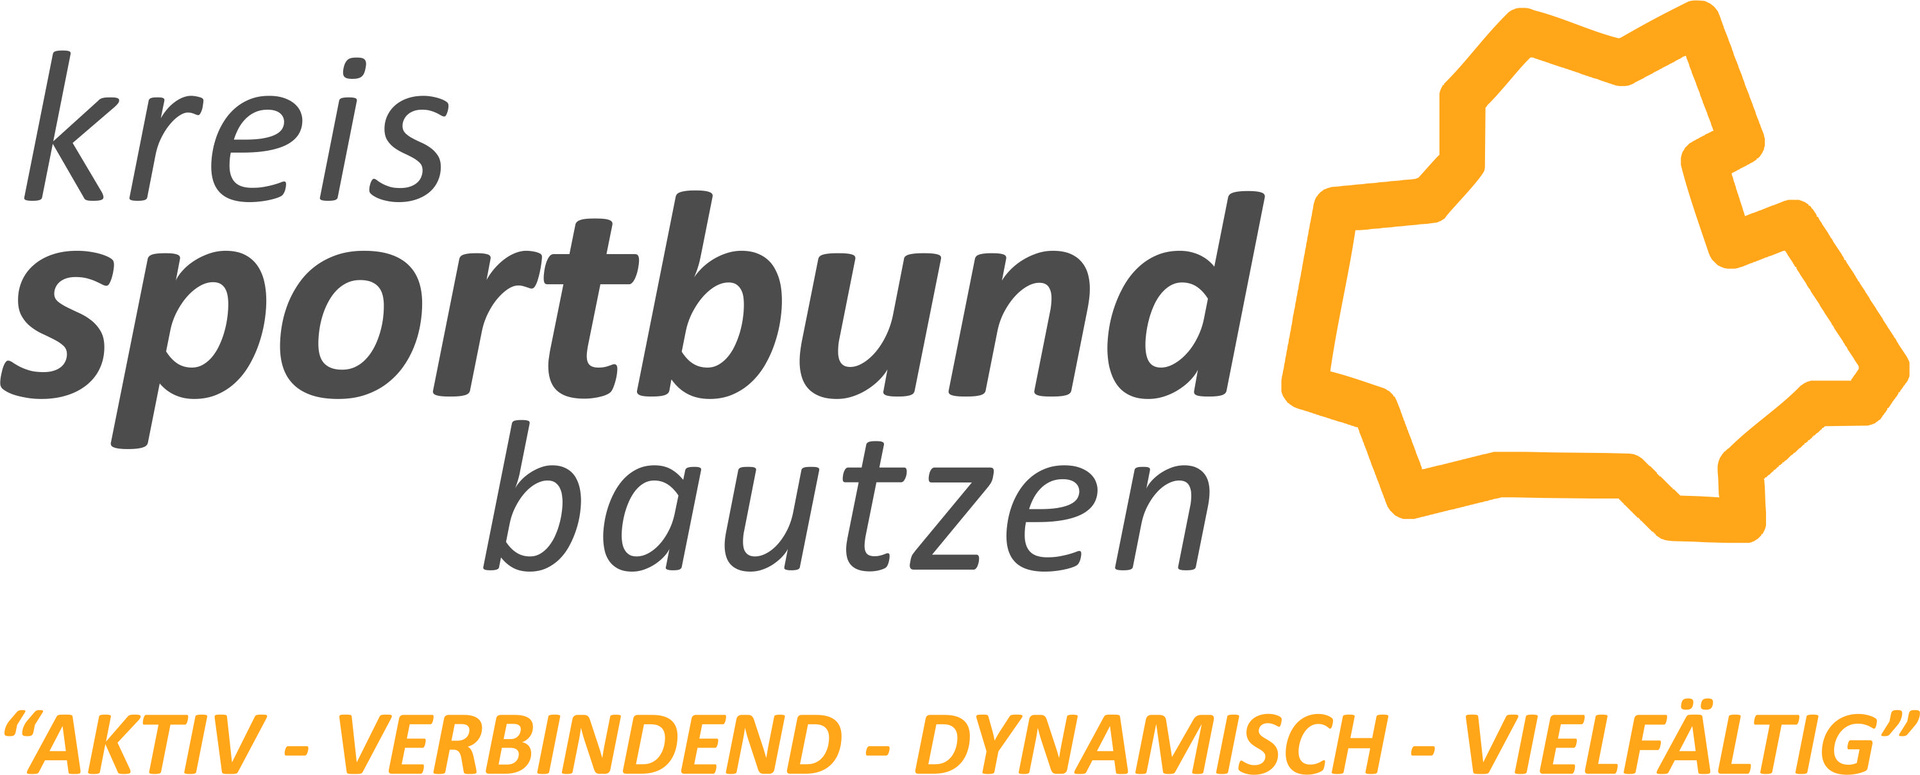 kreissportbund-bautzen-1576751278